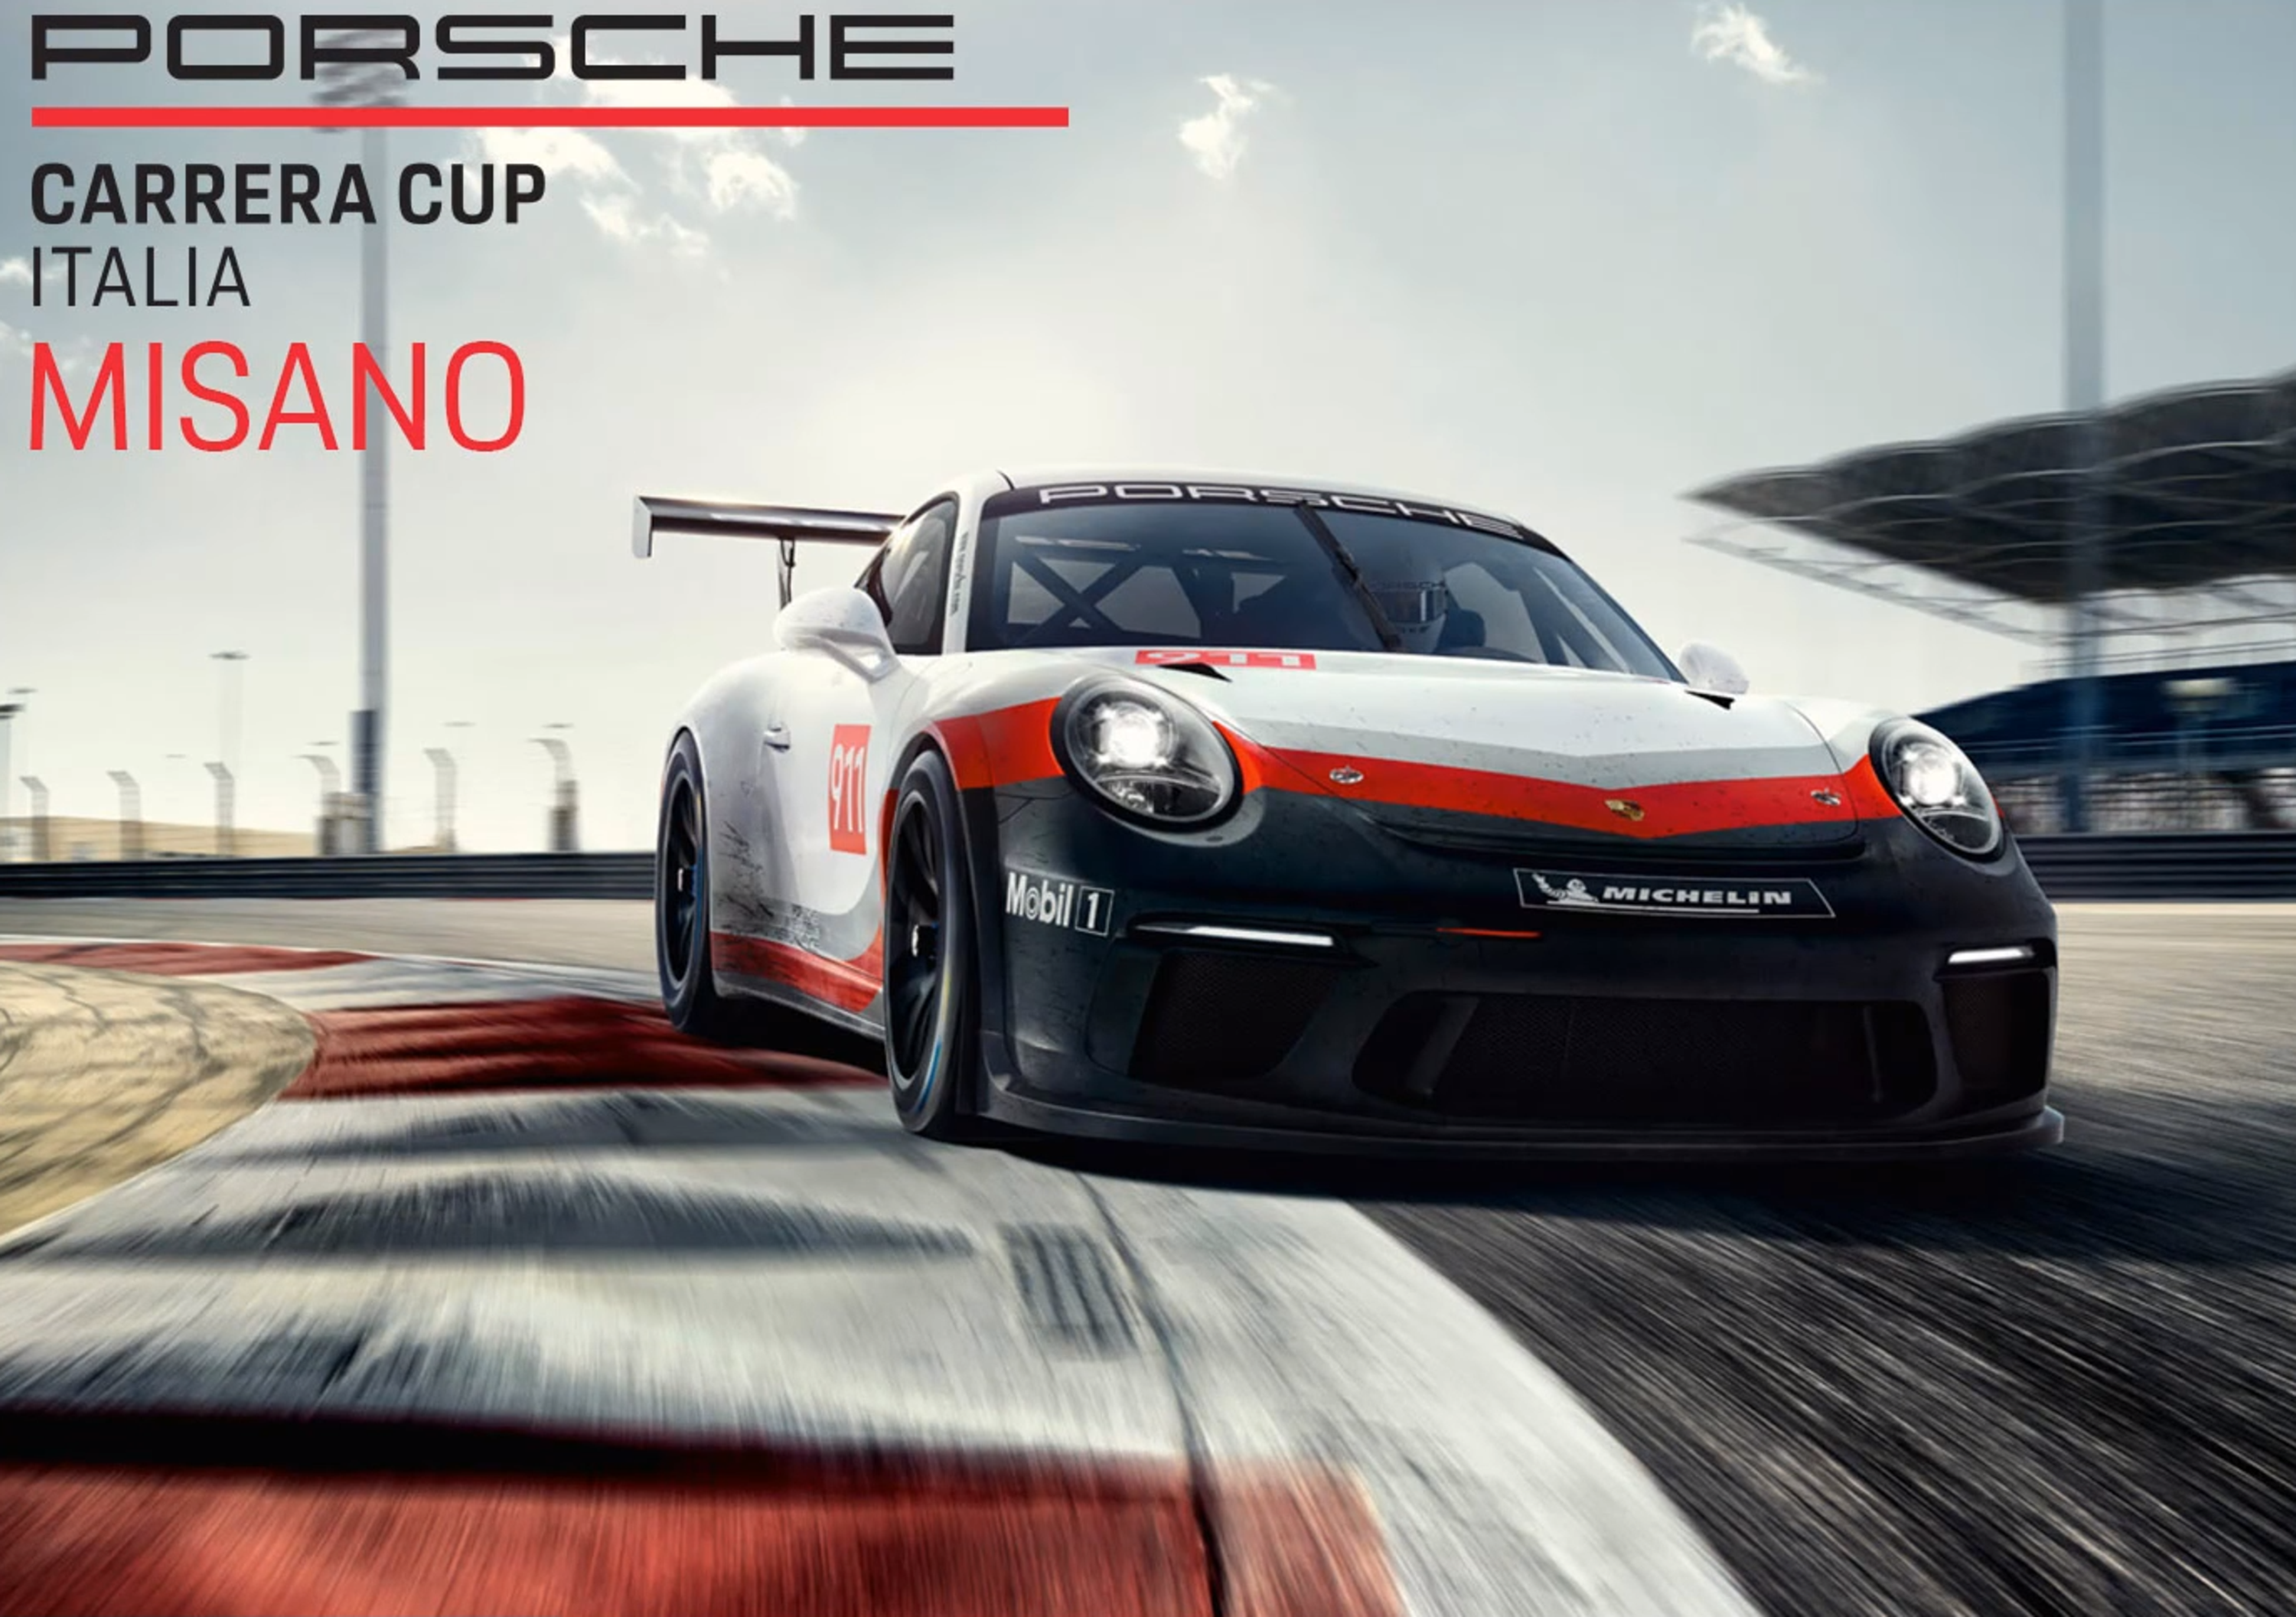 Porsche Carrera Cup eSport, le pagelle di Misano